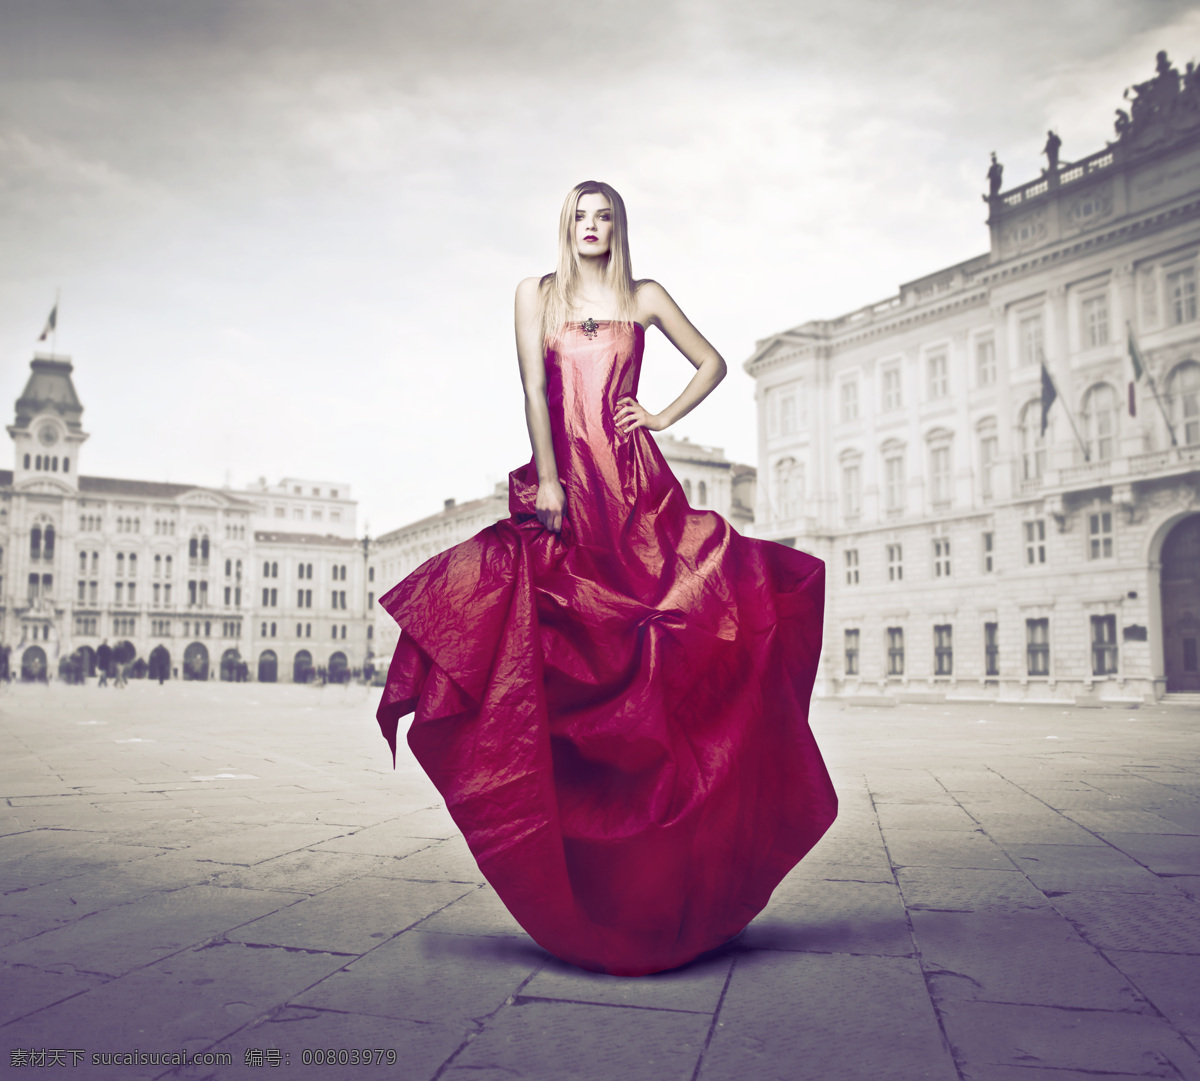 时尚 模特 人物 女性 职业 时尚模特 艺术照 红色礼服 街景 美女图片 人物图片